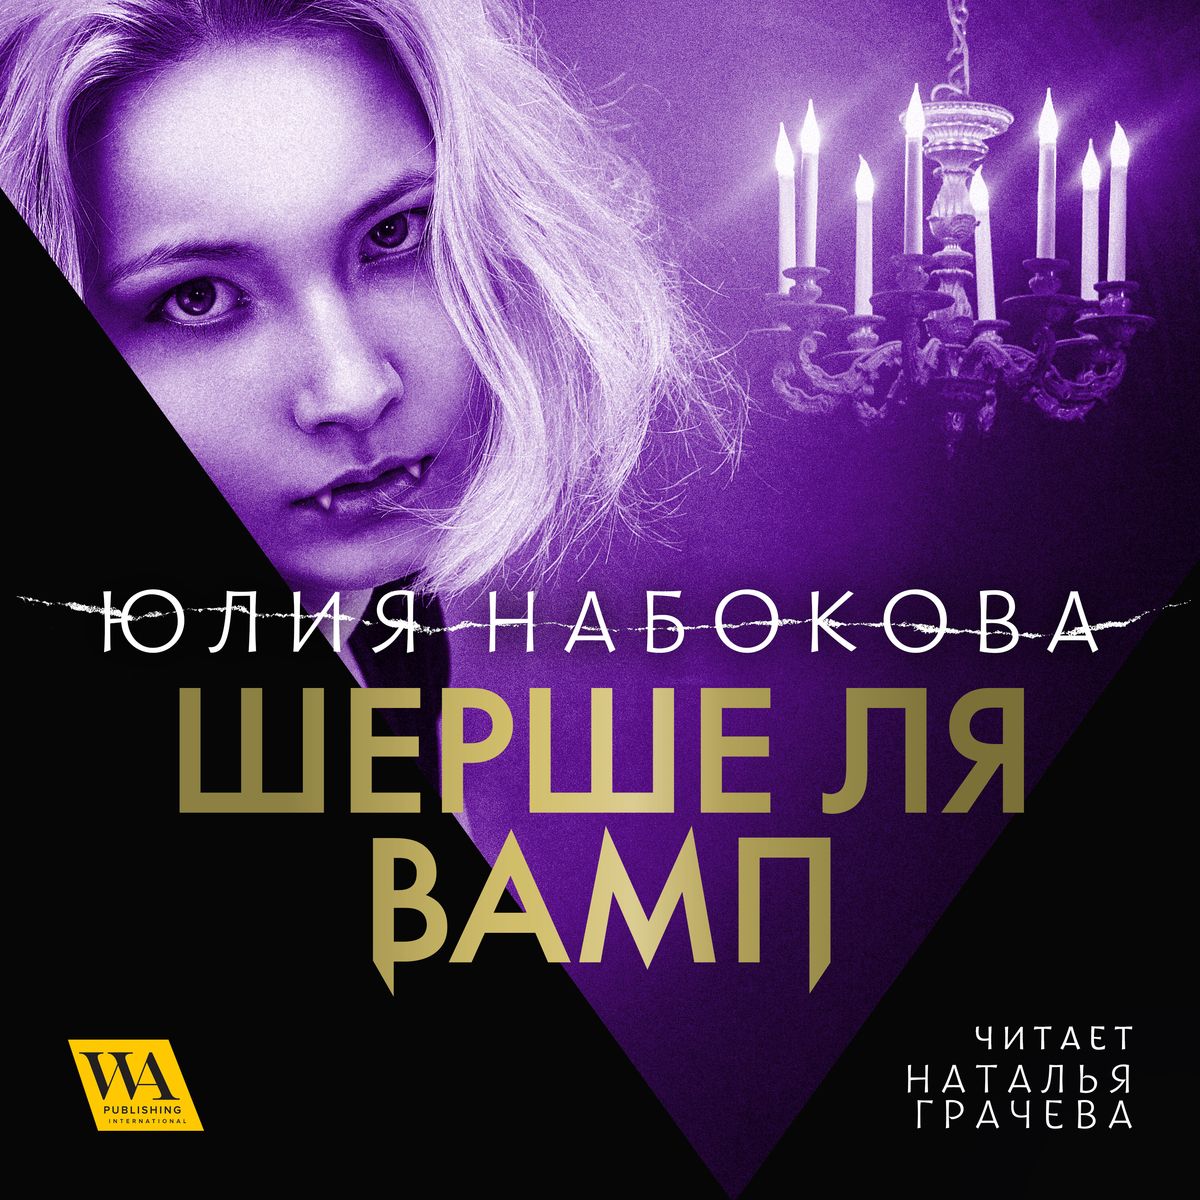 Юлия Набокова - «Шерше ля вамп»